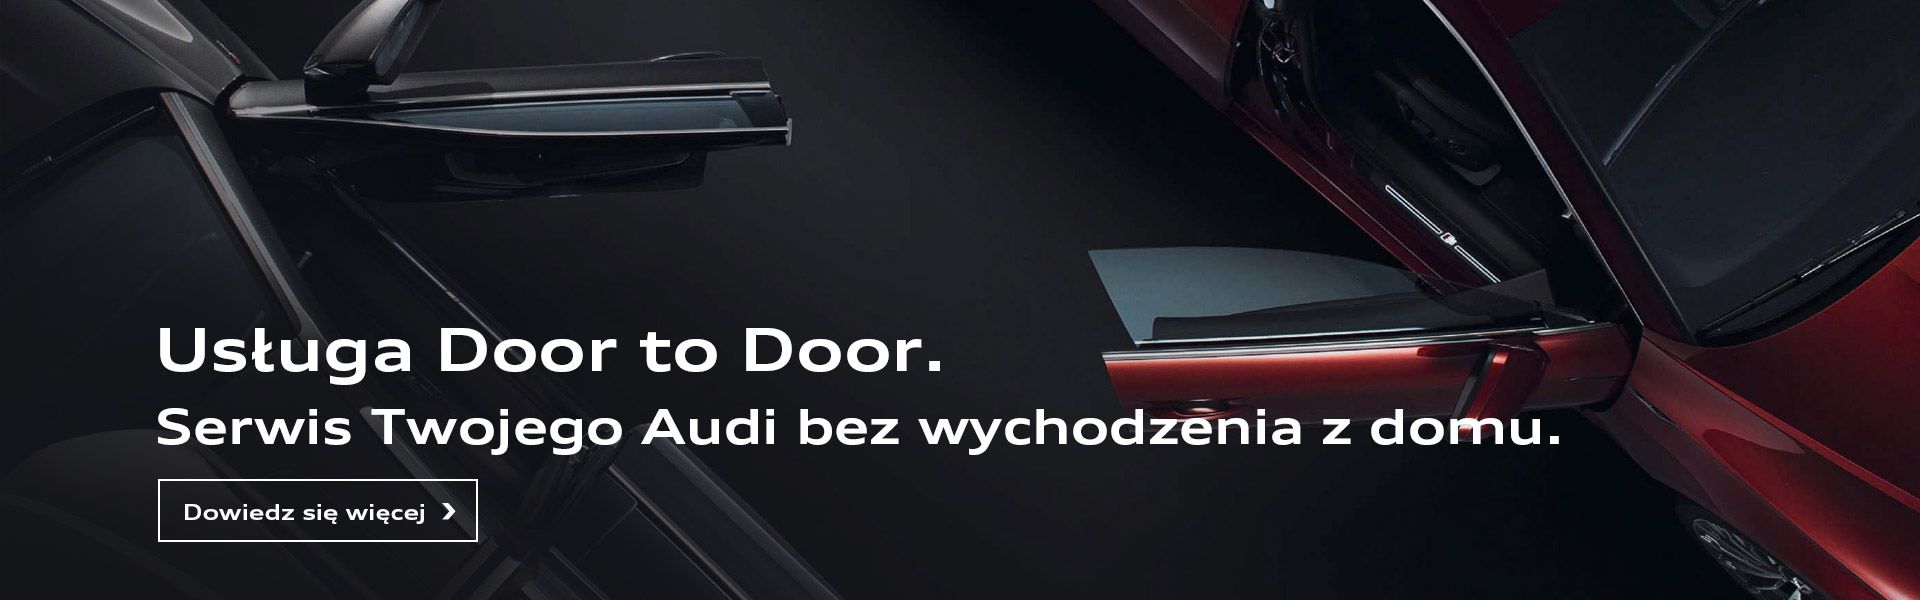 Audi Door to Door